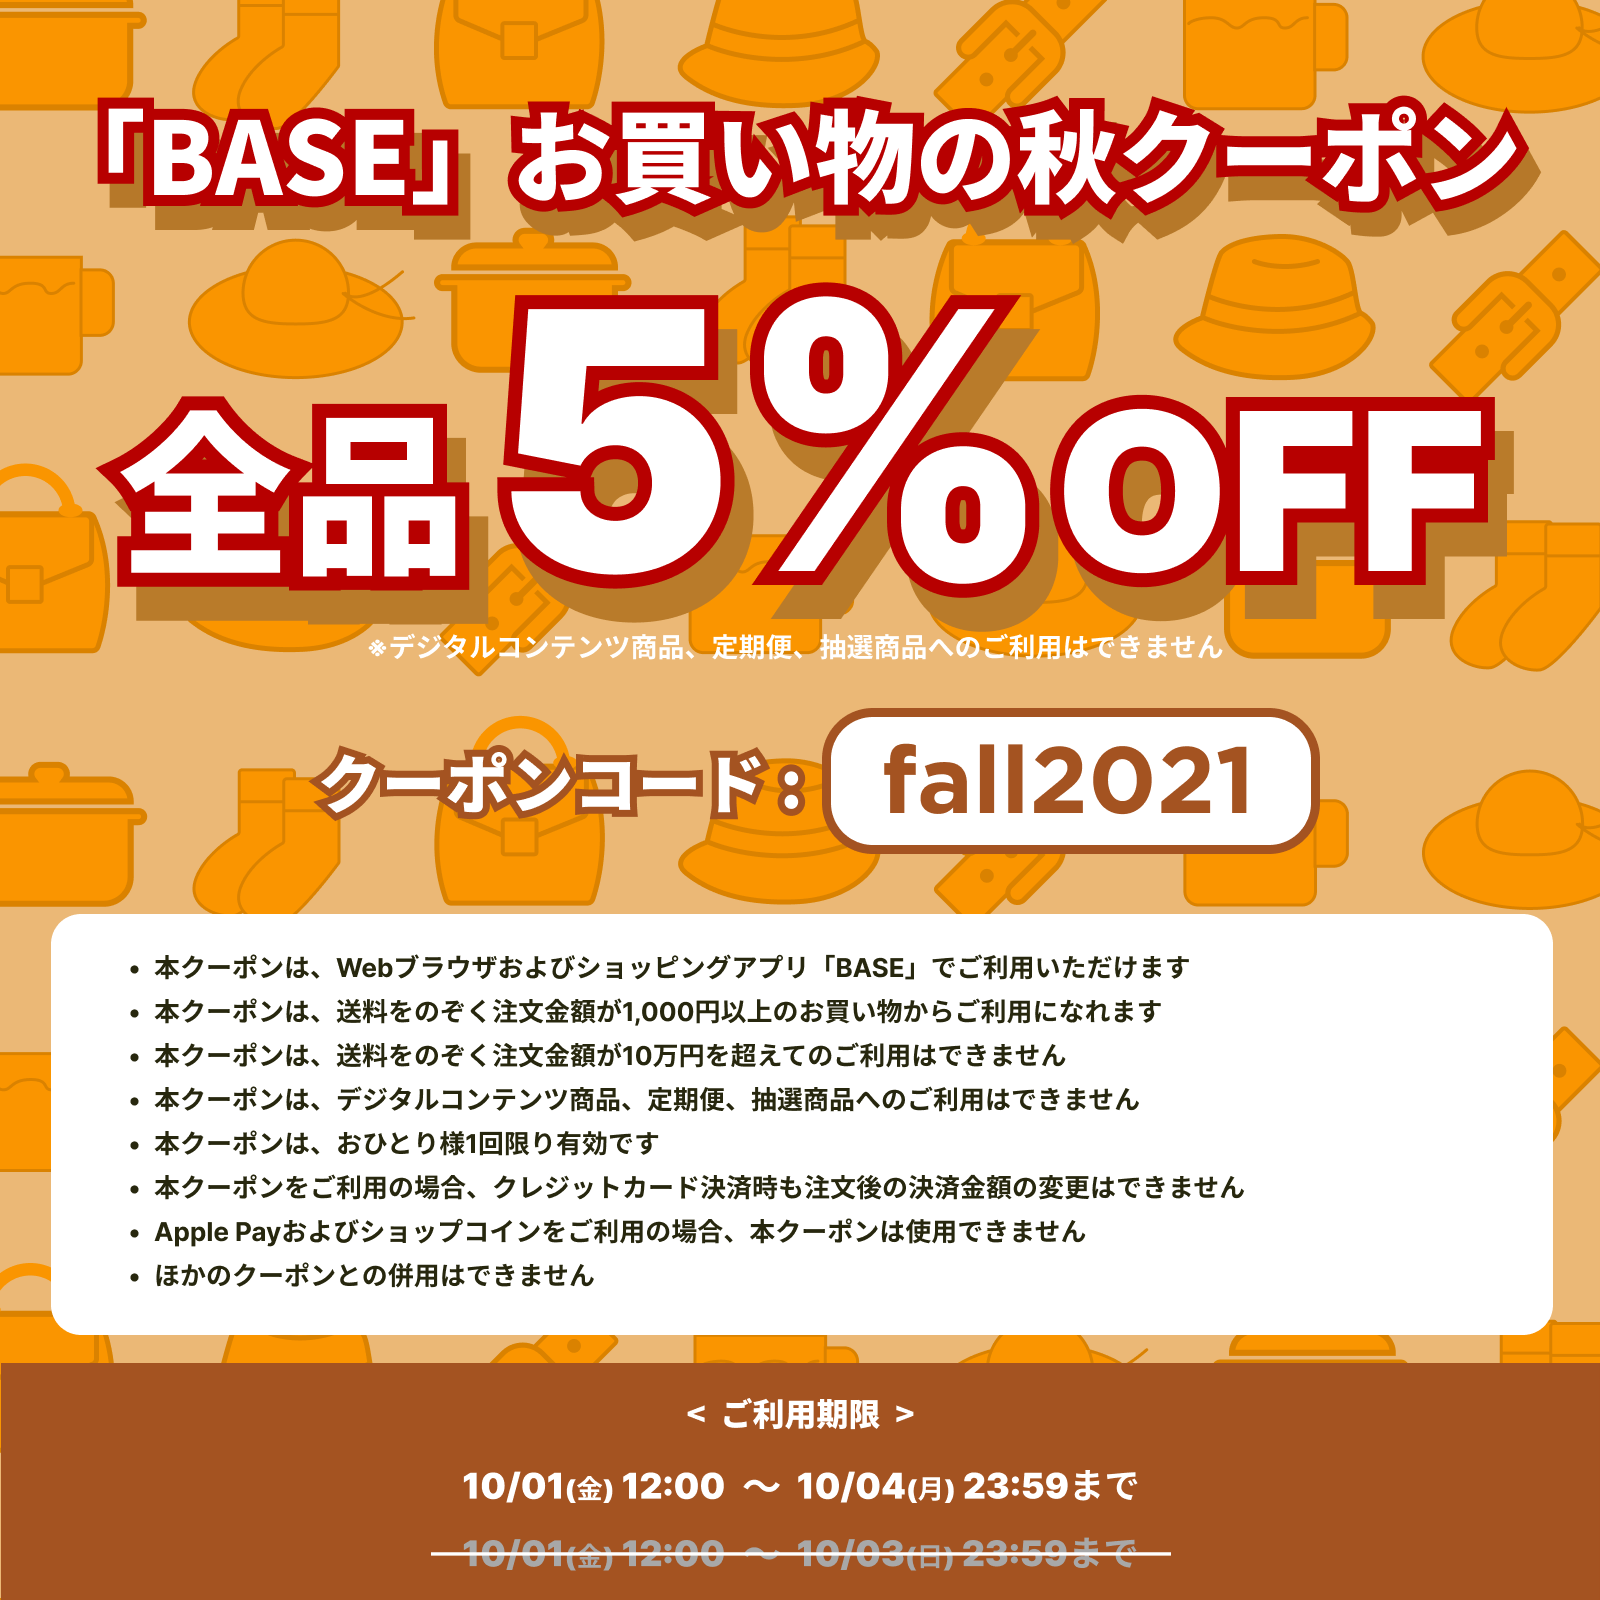 「BASE」5%OFF秋クーポンキャンペーン！【10/4 23:59まで】